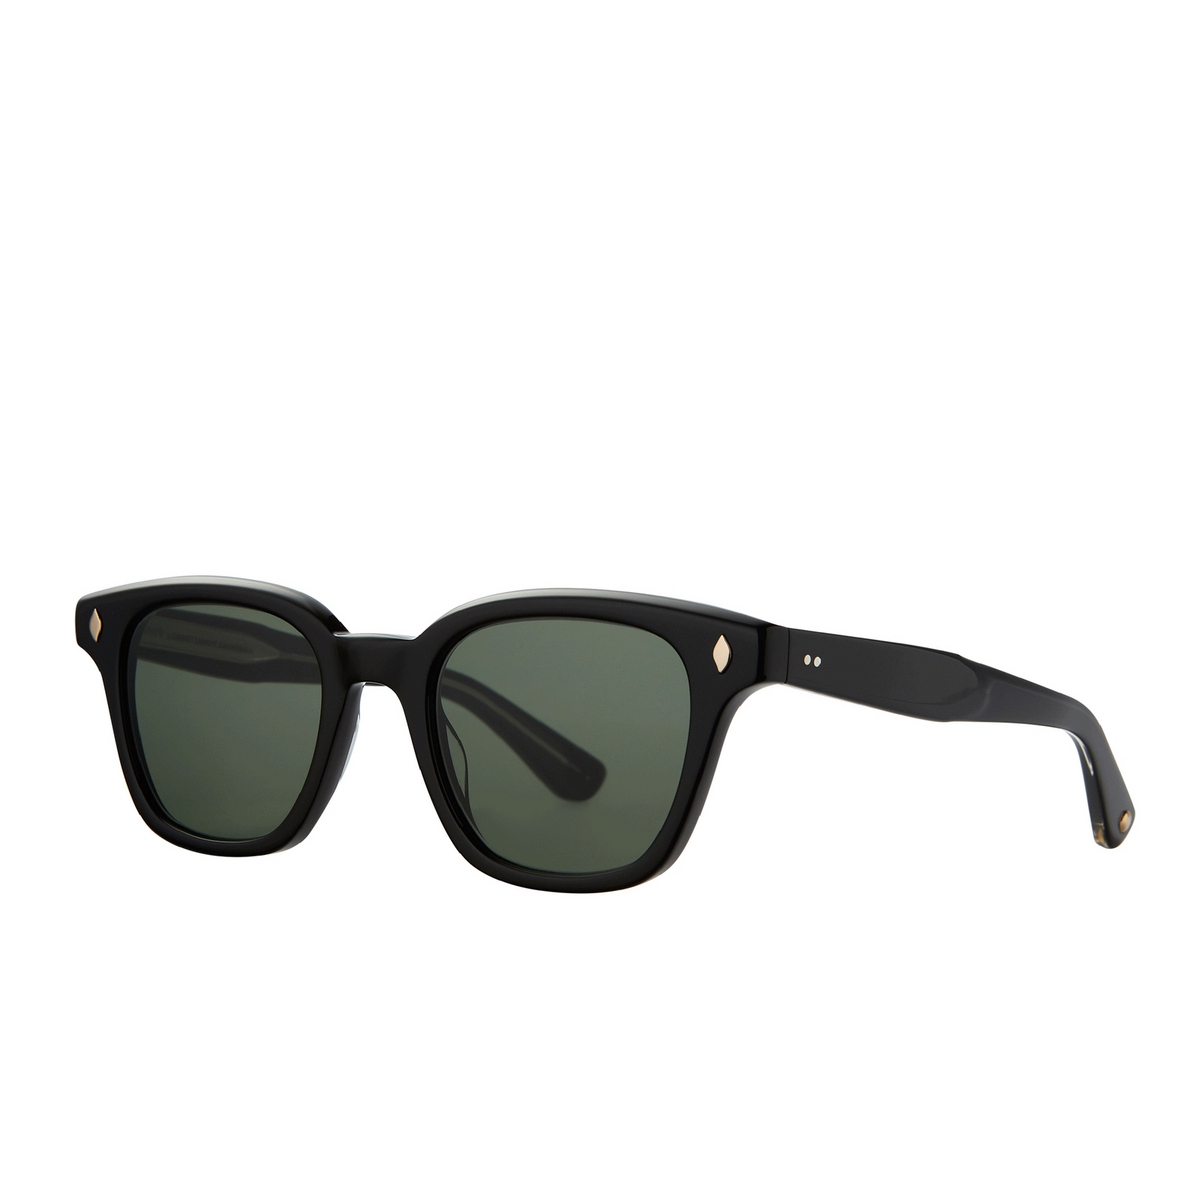 Garrett Leight BROADWAY Sunglasses BK/SFPG15 Black/Semi-Flat Pure G15 - three-quarters view